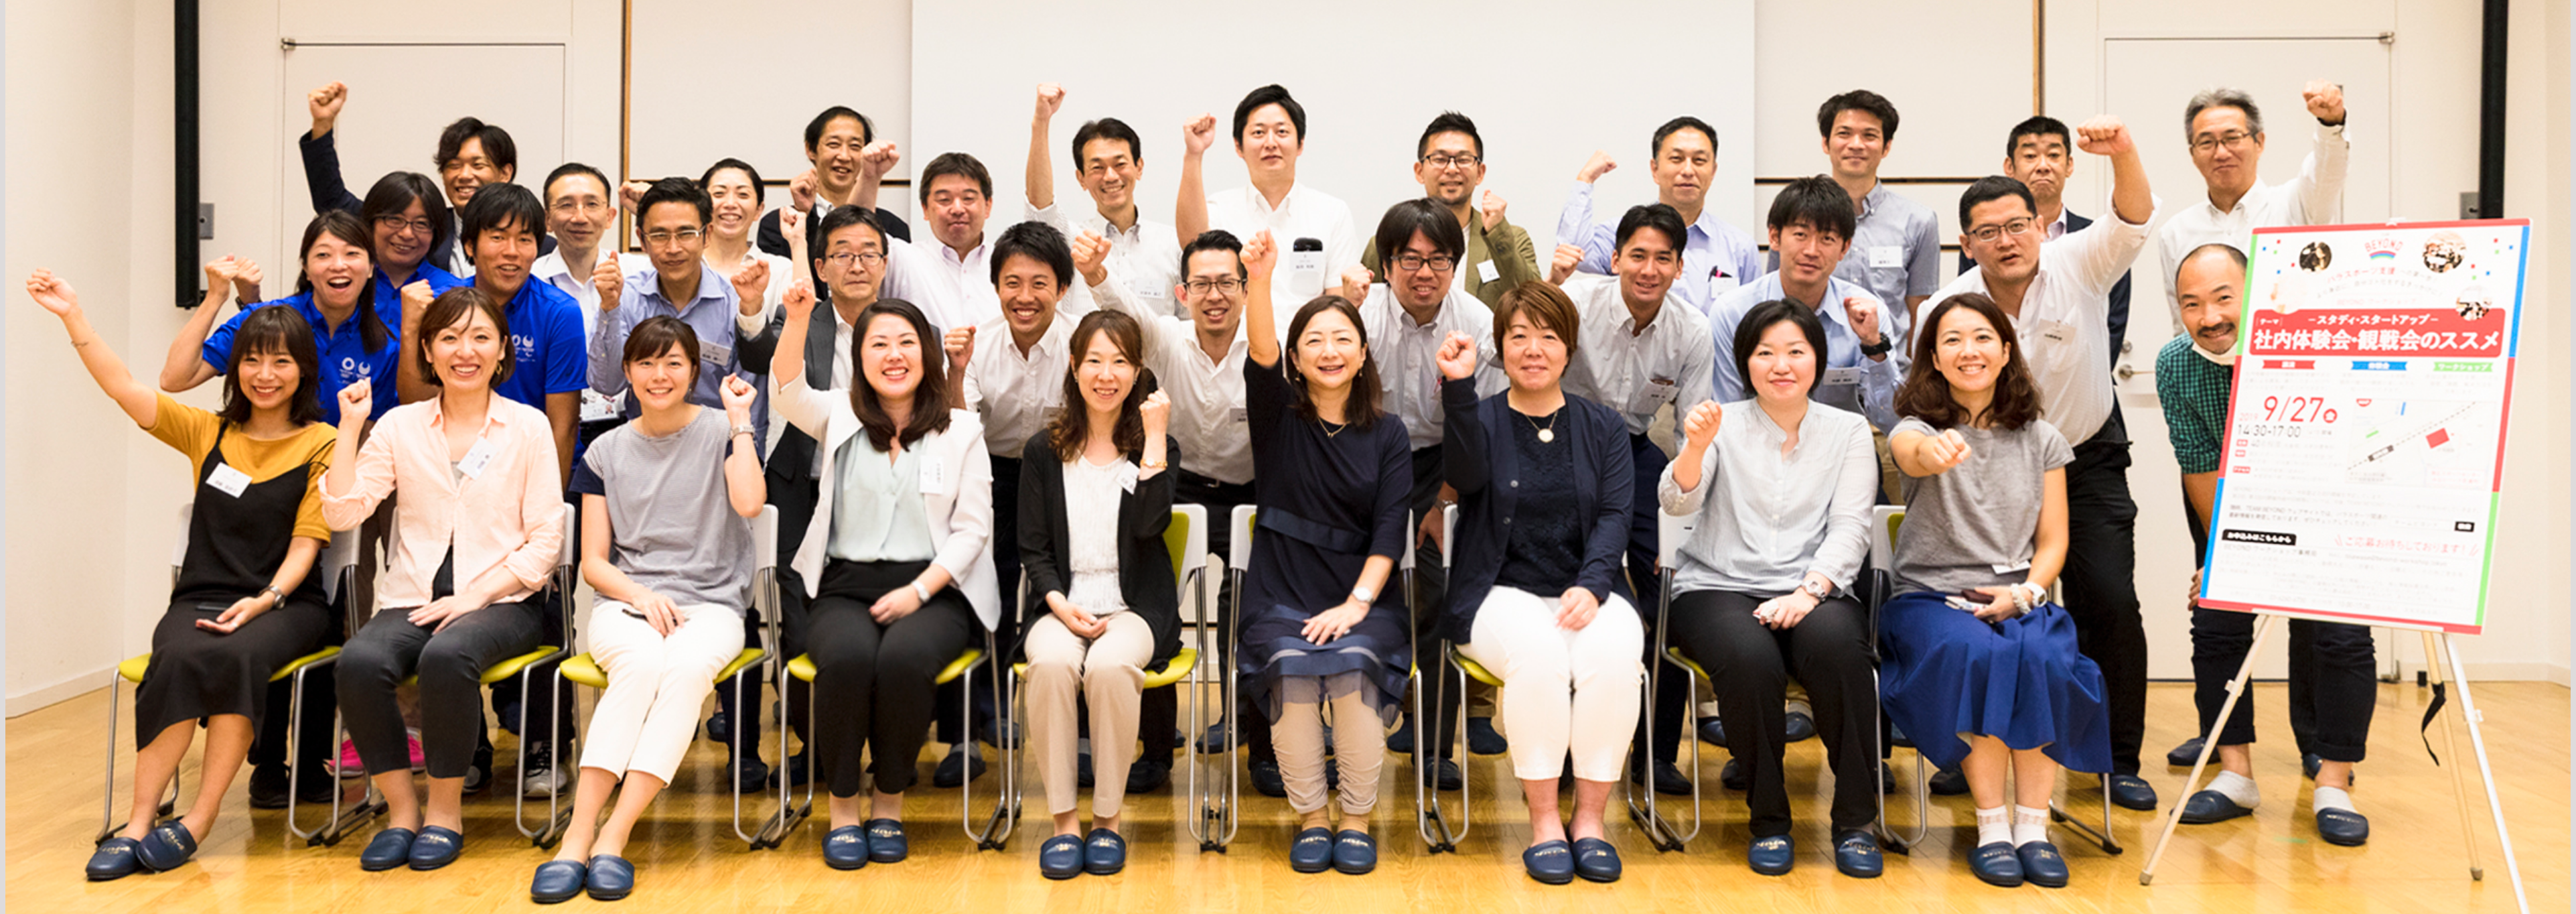 カンファレンス・ワークショップ BEYONDワークショップReview episode1 | TEAM BEYOND | TOKYO パラスポーツプロジェクト公式サイト